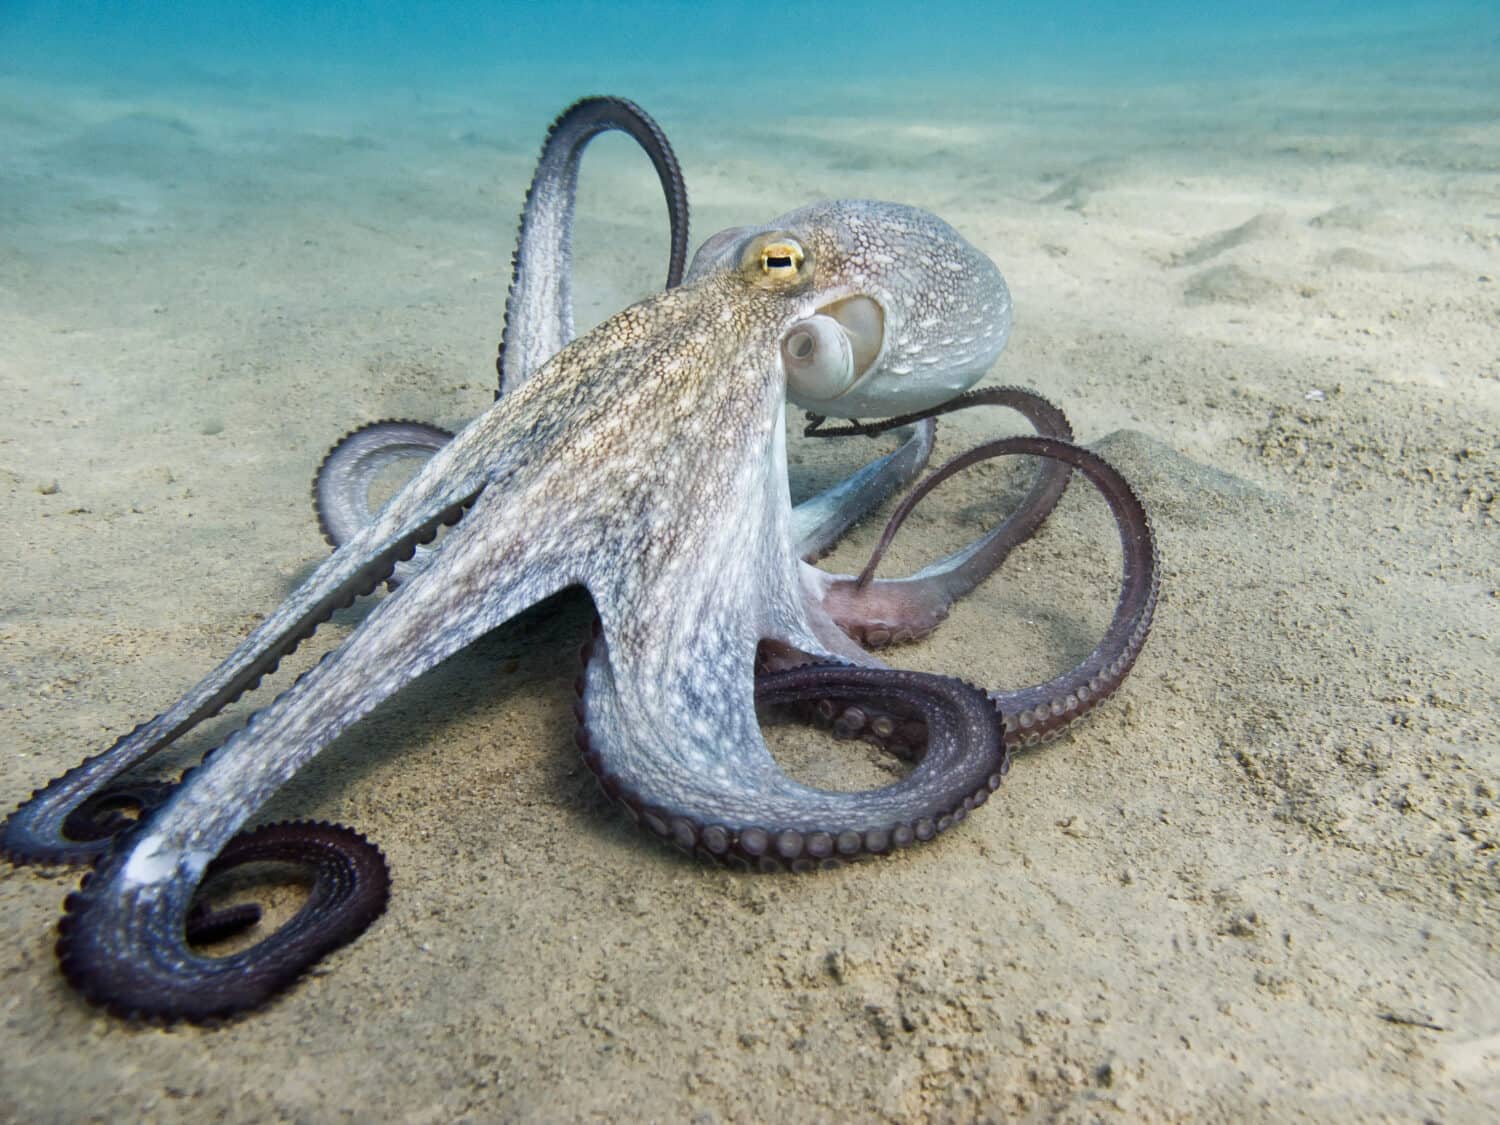 Il polpo (Octopus vulgaris Cuvier, 1797) o polpo è un cefalopode della famiglia Octopodidae marino